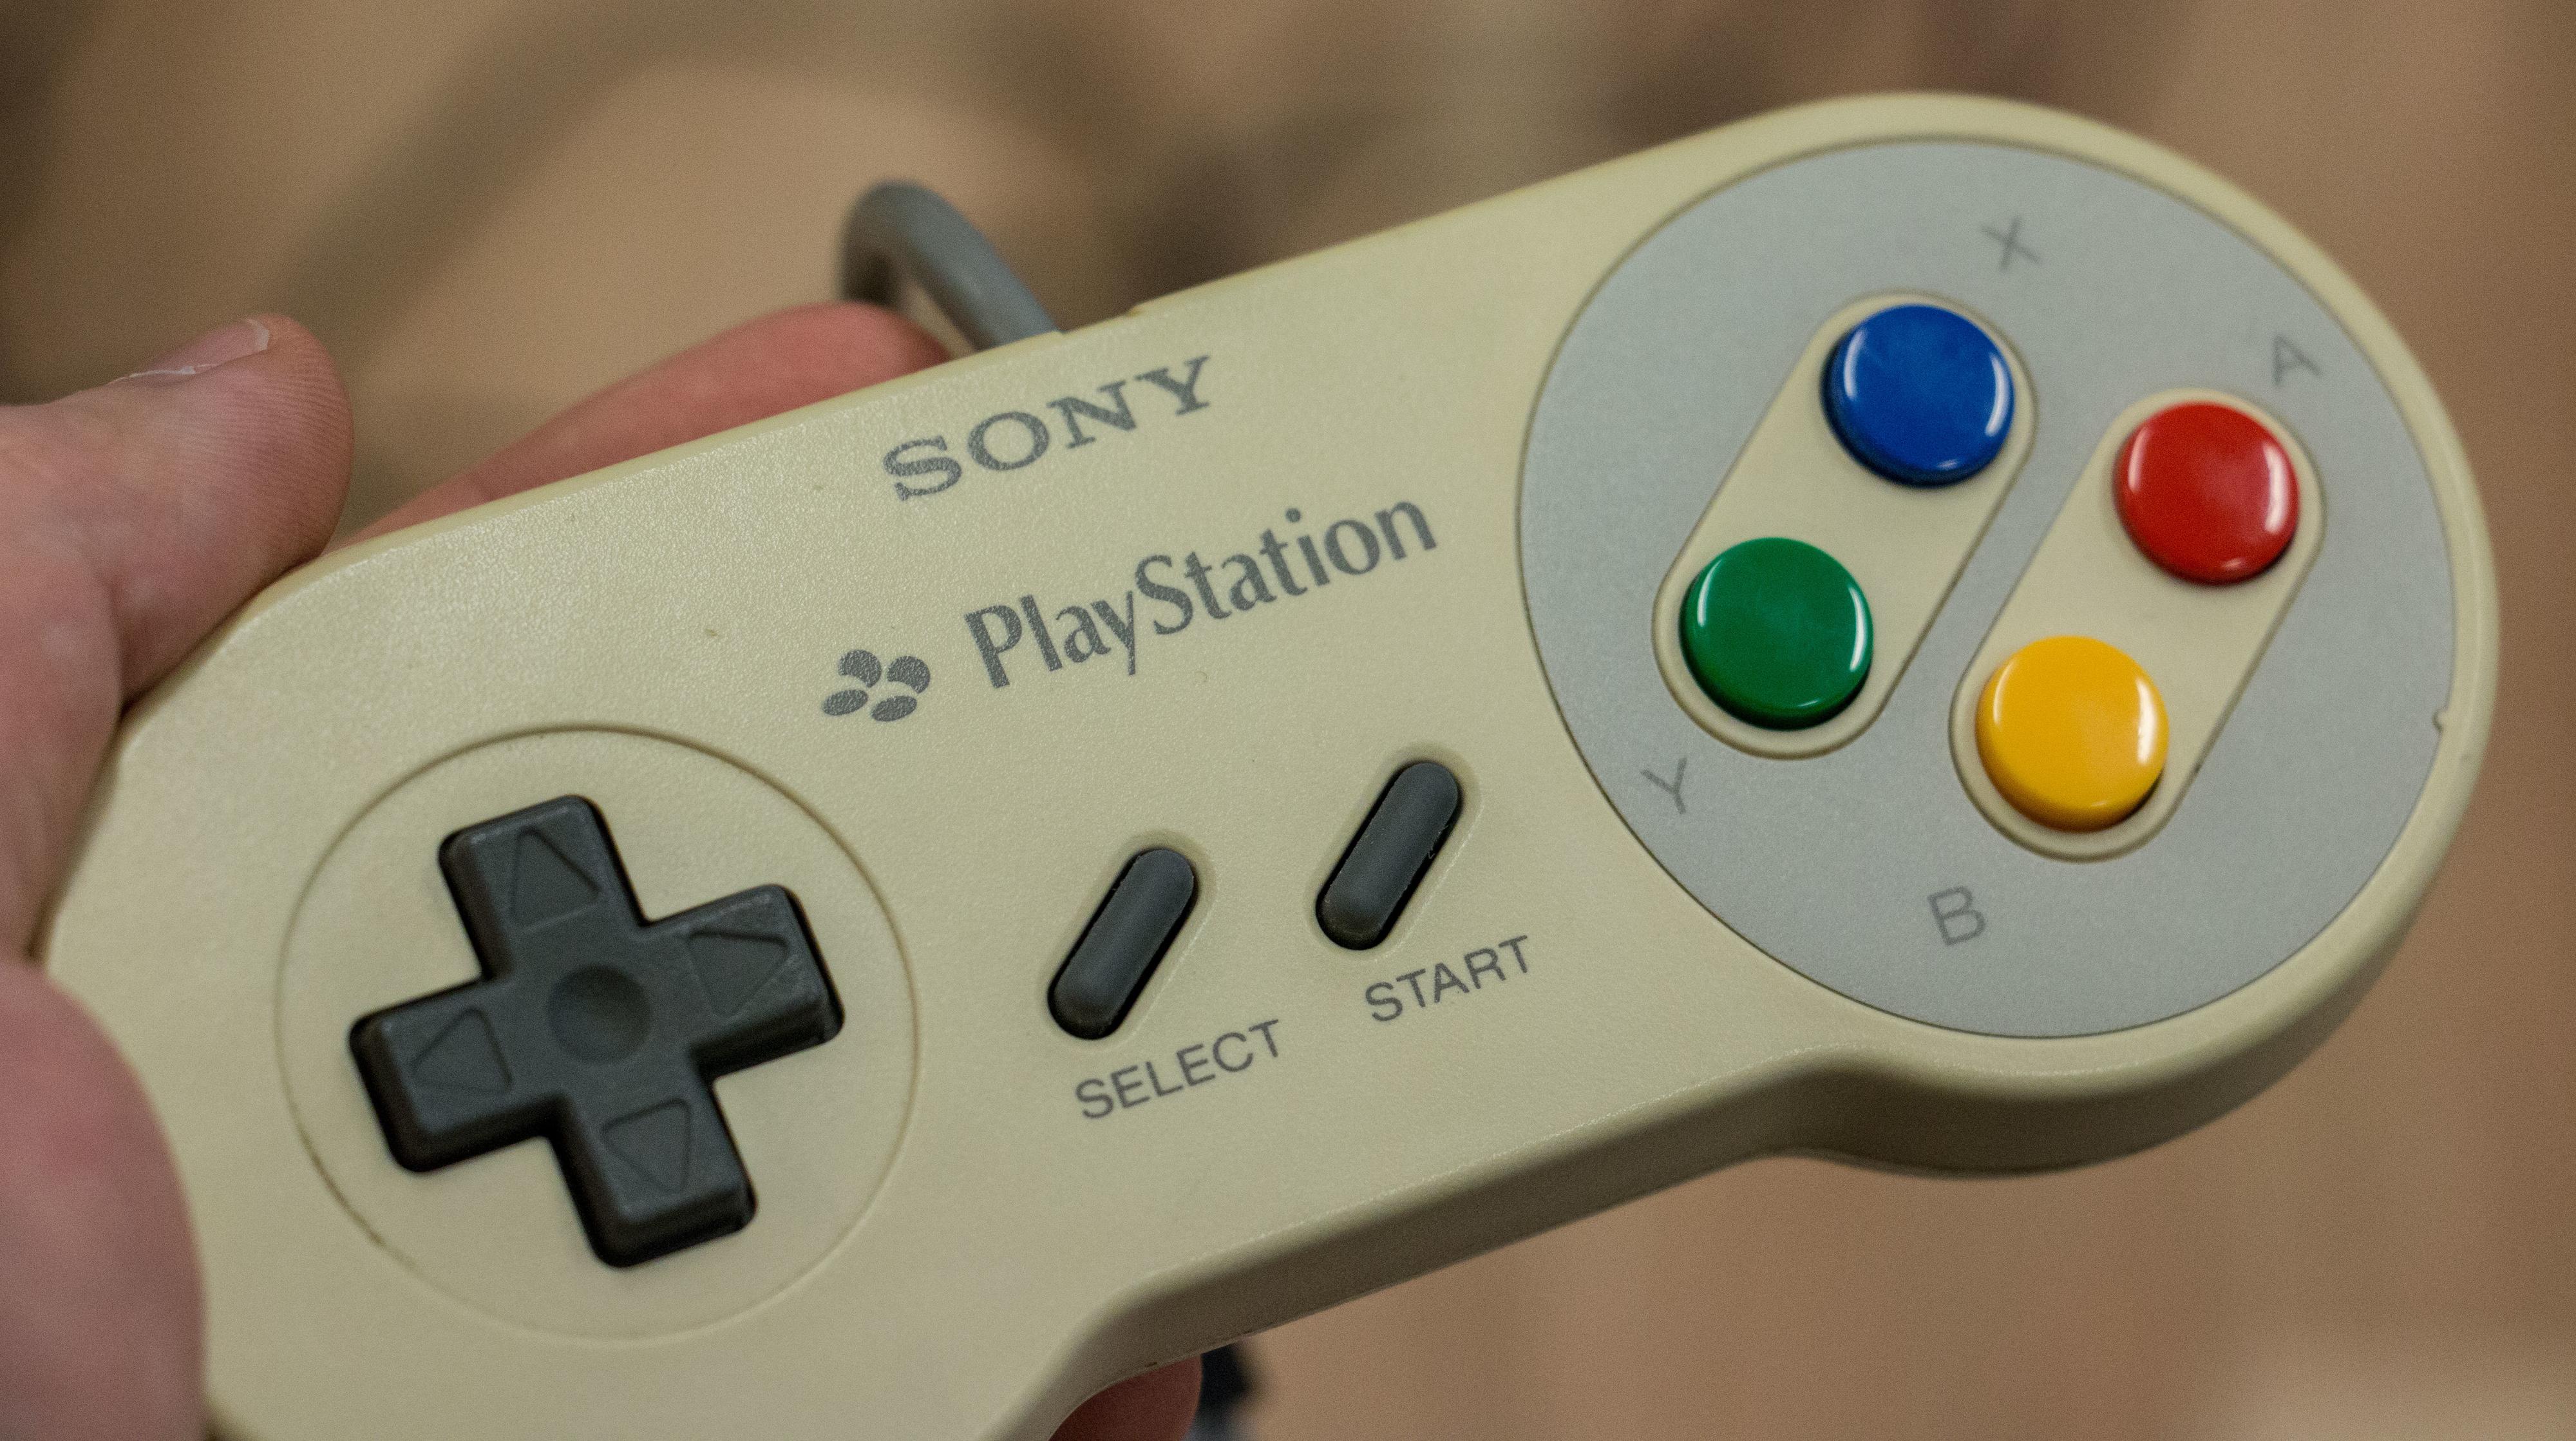 Ved første øyekast ser det kanskje ut som en vanlig SNES-kontroller, helt til du ser logoene. Dette er trolig det første produktet med en PlayStation-logo.